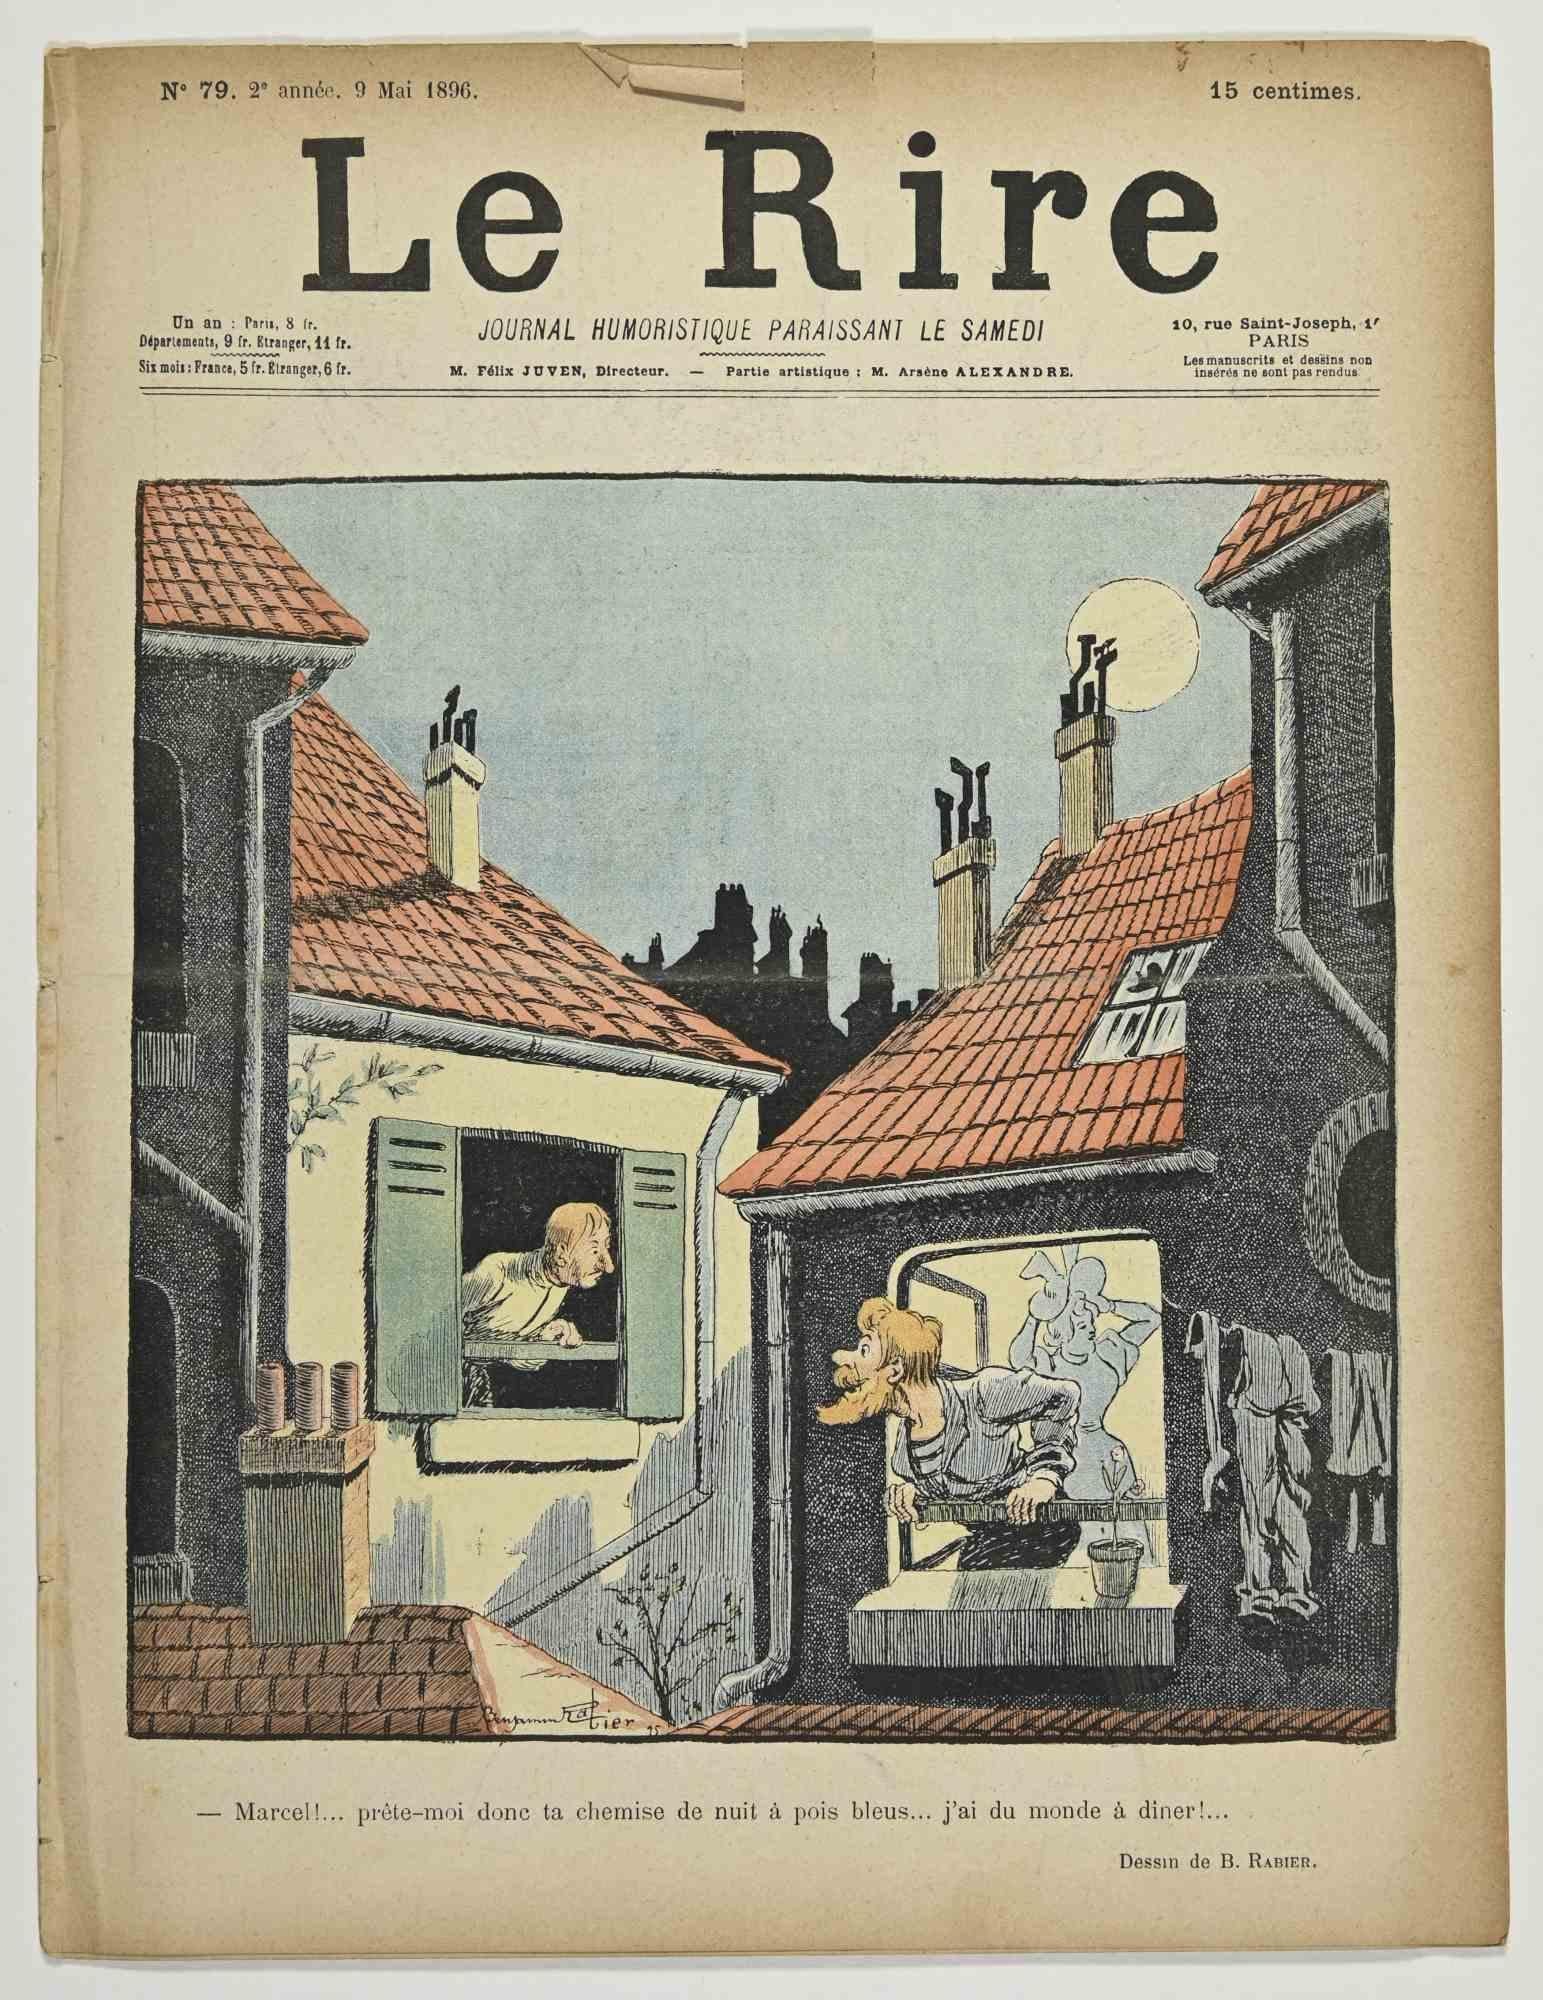 Le Rire - Illustrierte Zeitschrift nach Charles Huard - 1896